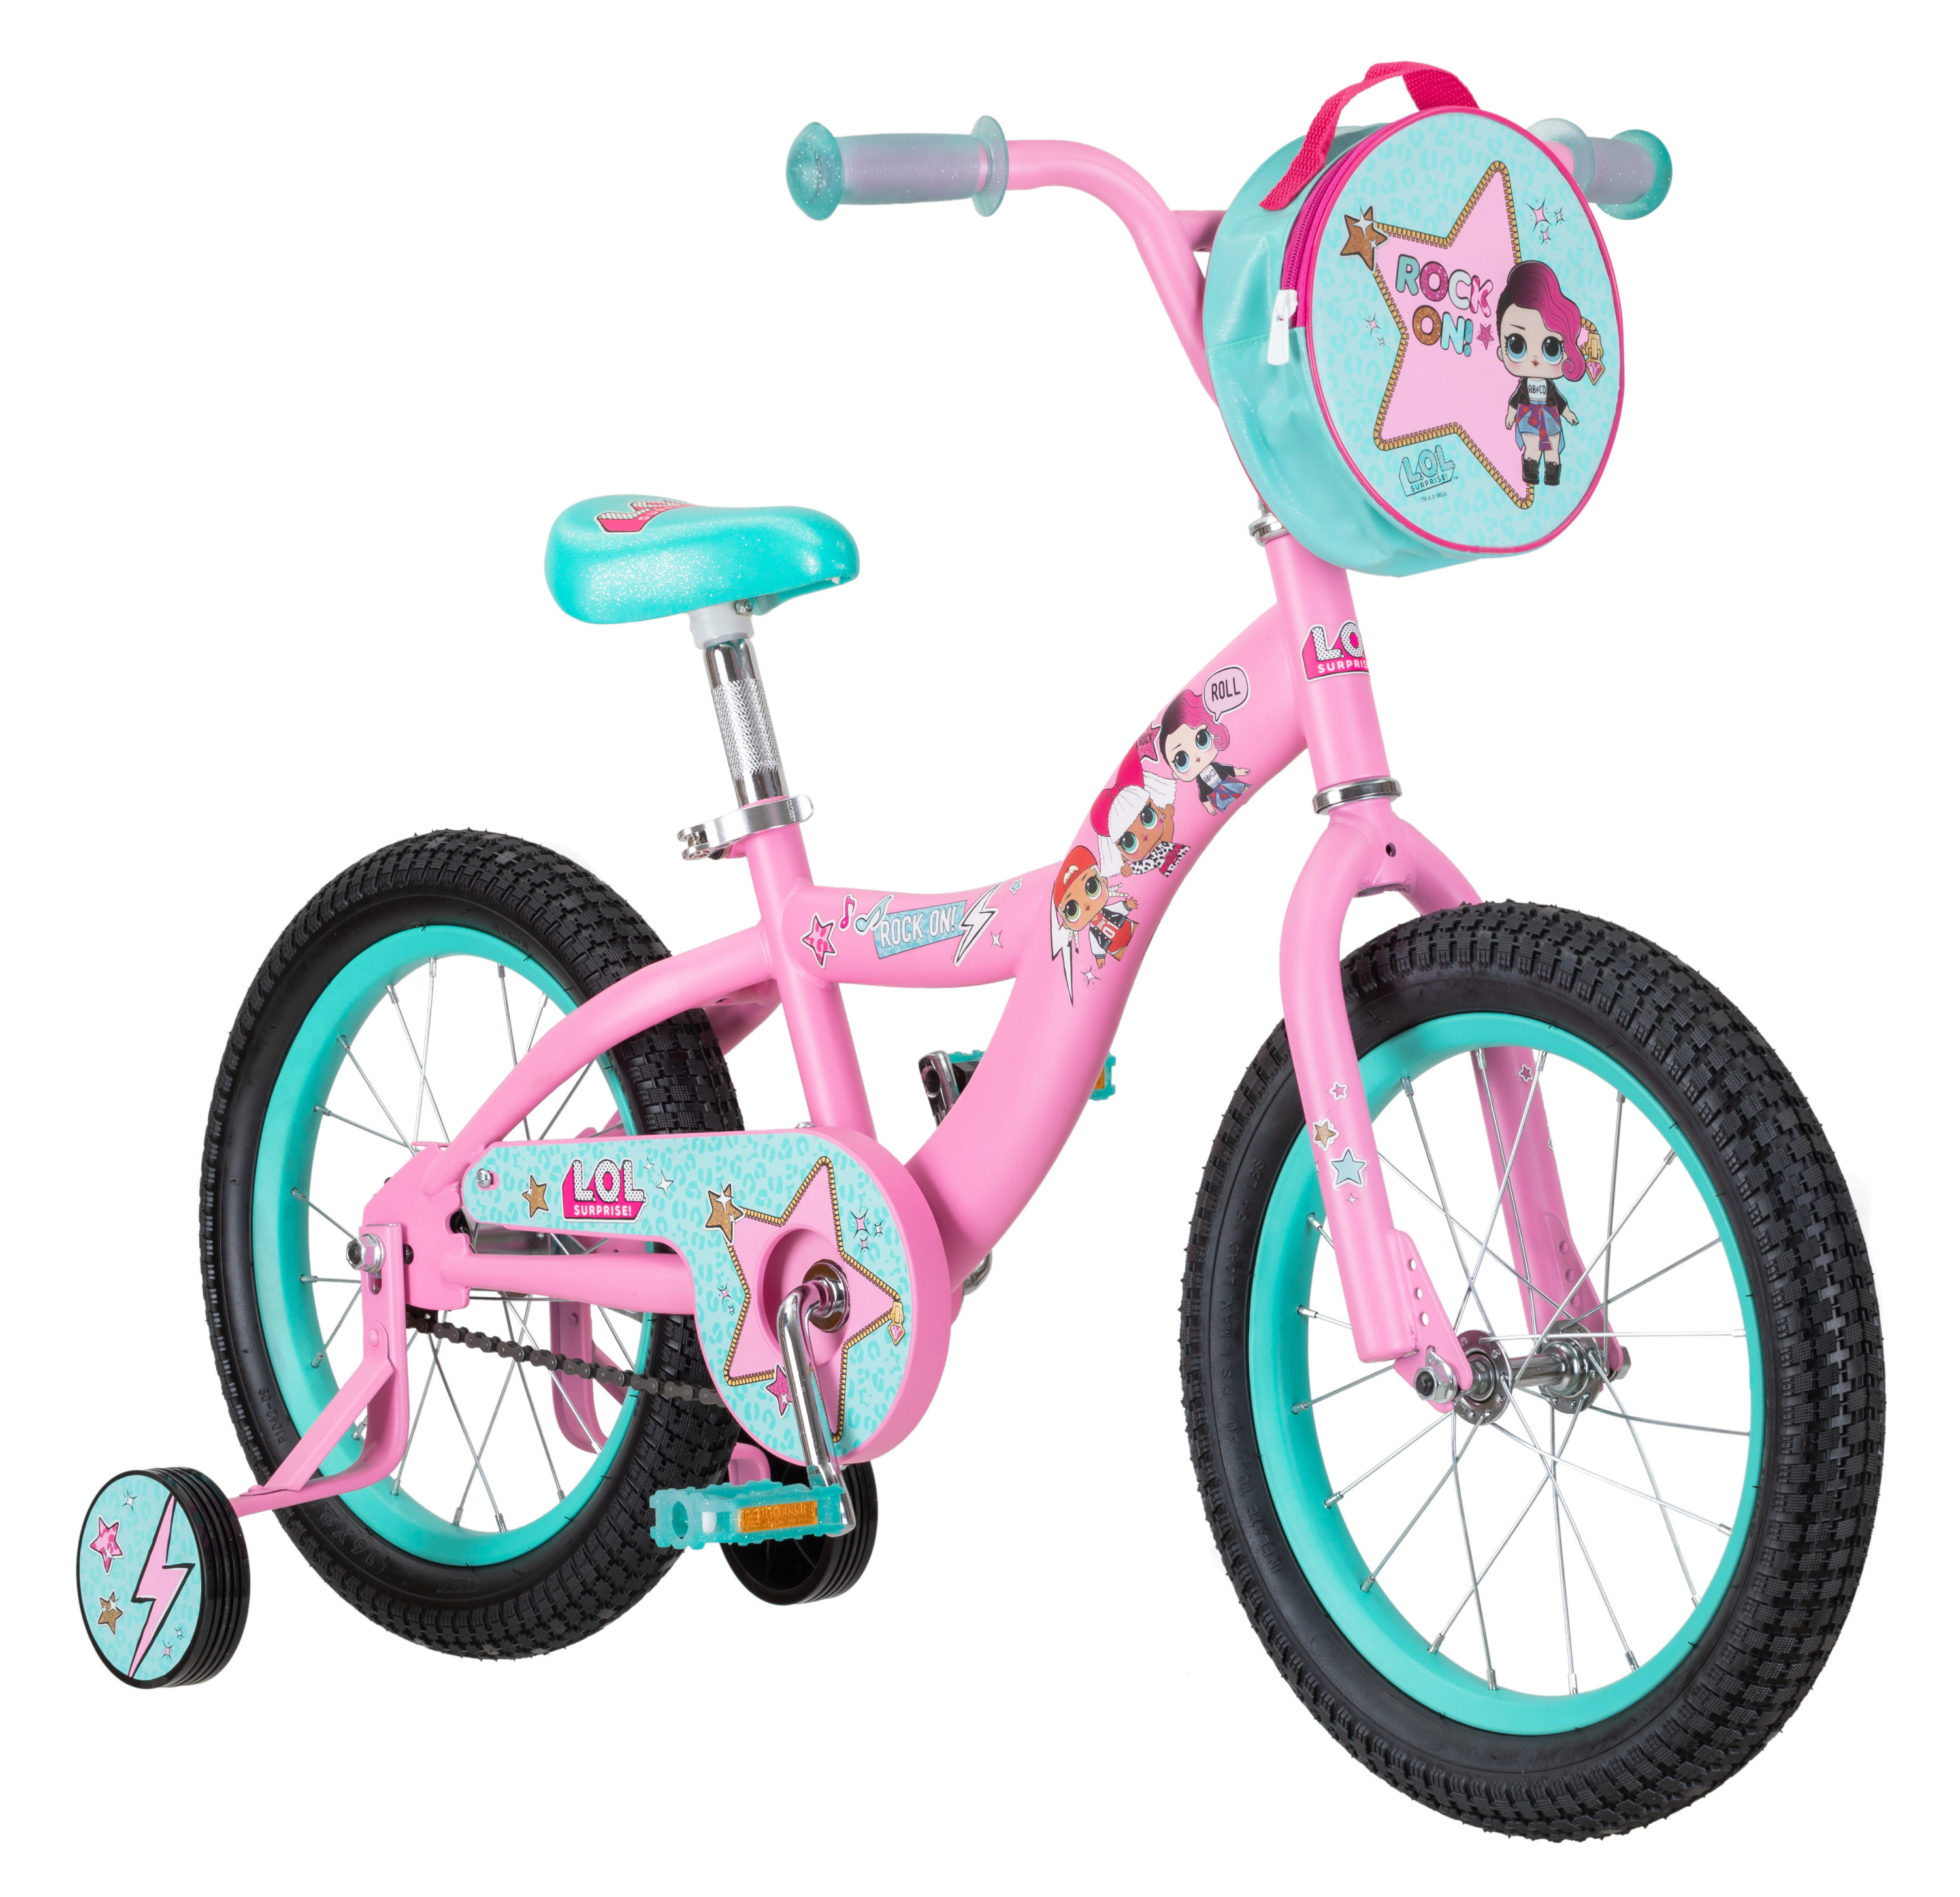 LOL Surprise kids bike, 16-inch wheel, Girls, Pink - image 1 of 9